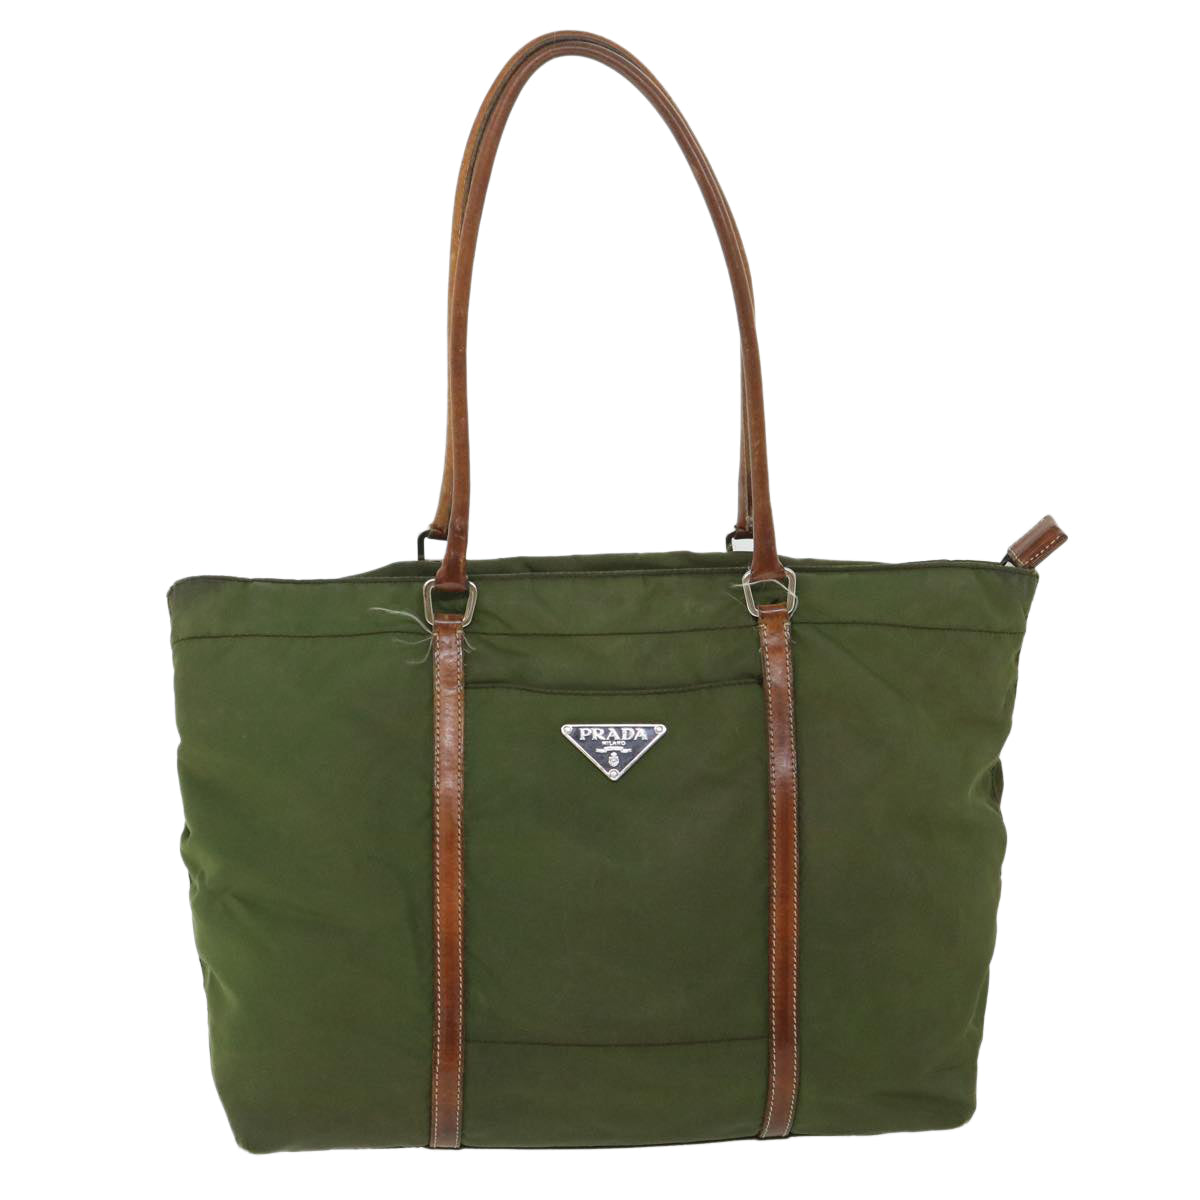 PRADA Tote Bag Nylon Leather Khaki Brown Auth ac2231 - 0